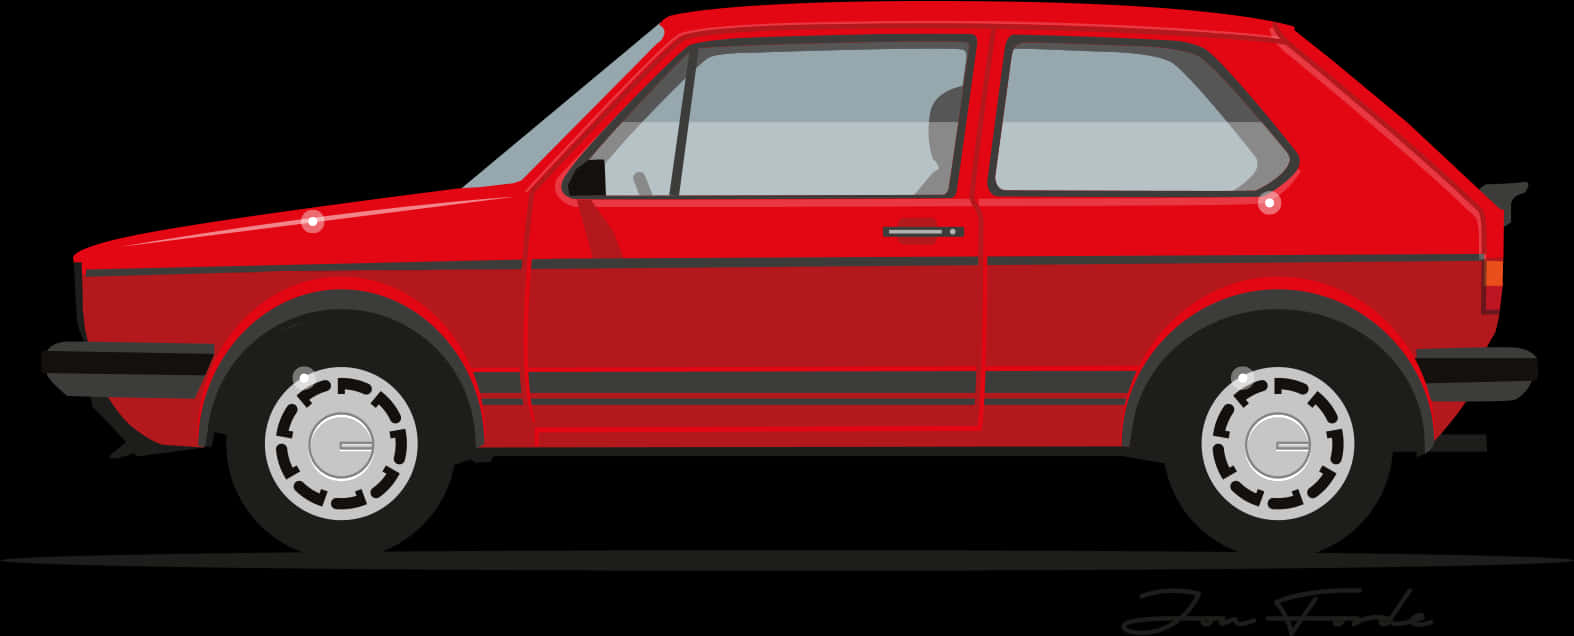 Red Hatchback Car Side View PNG image